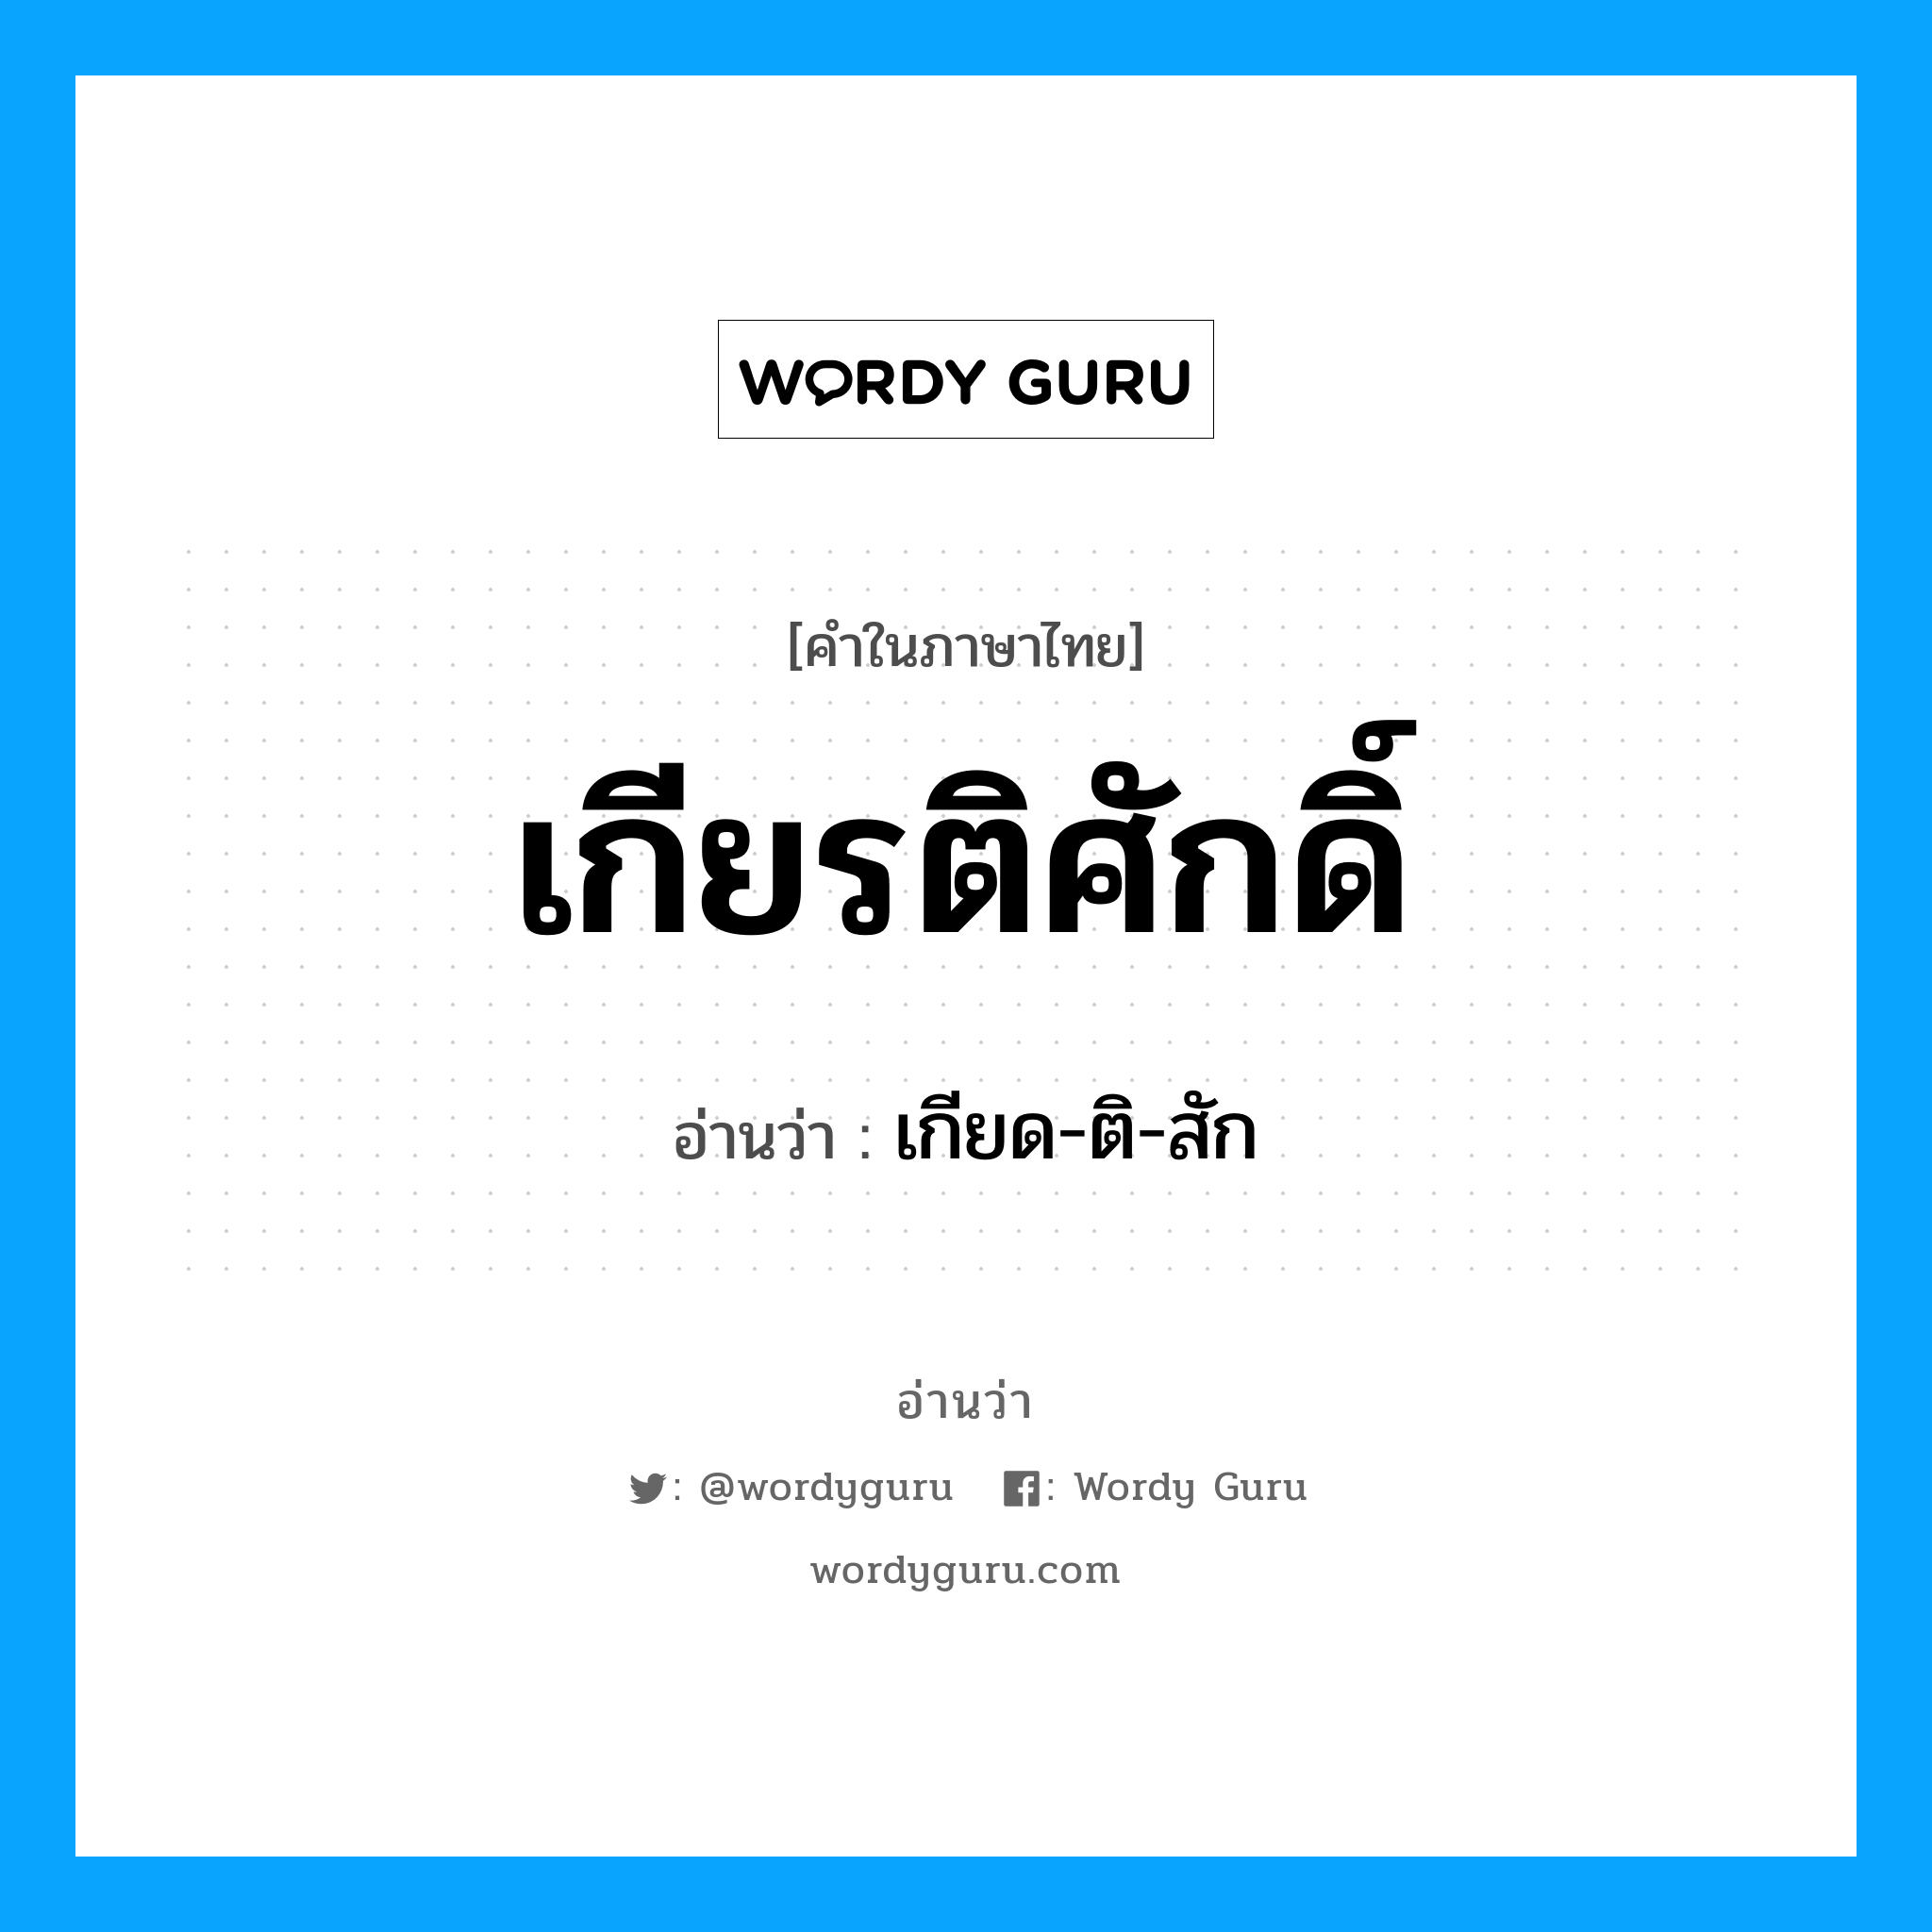 เกียด-ติ-สัก เป็นคำอ่านของคำไหน?, คำในภาษาไทย เกียด-ติ-สัก อ่านว่า เกียรติศักดิ์